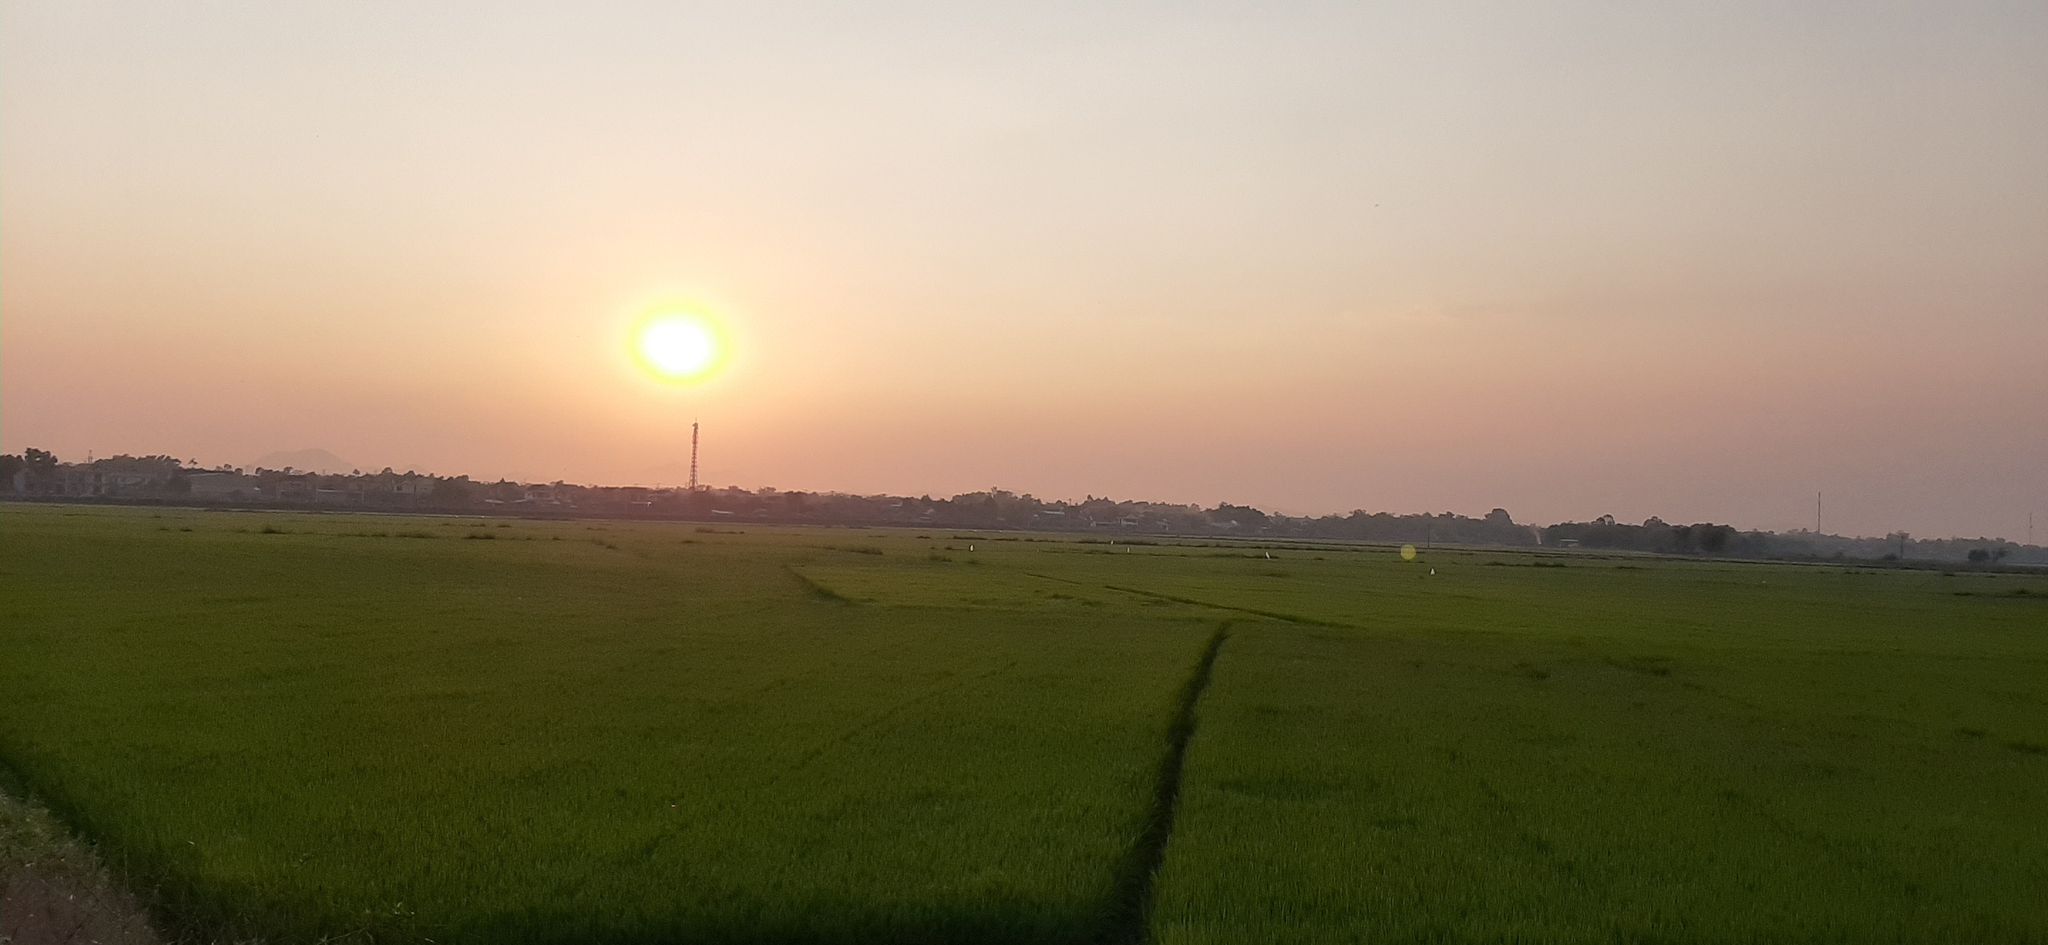 Đến thời điểm hiện tại cây lúa sản xuất trong vụ Đông Xuân 2020 – 2021 tại tỉnh Thừa Thiên - Huế vẫn đang phát triển tốt và chưa xuất hiện hiện tượng khô, hạn.